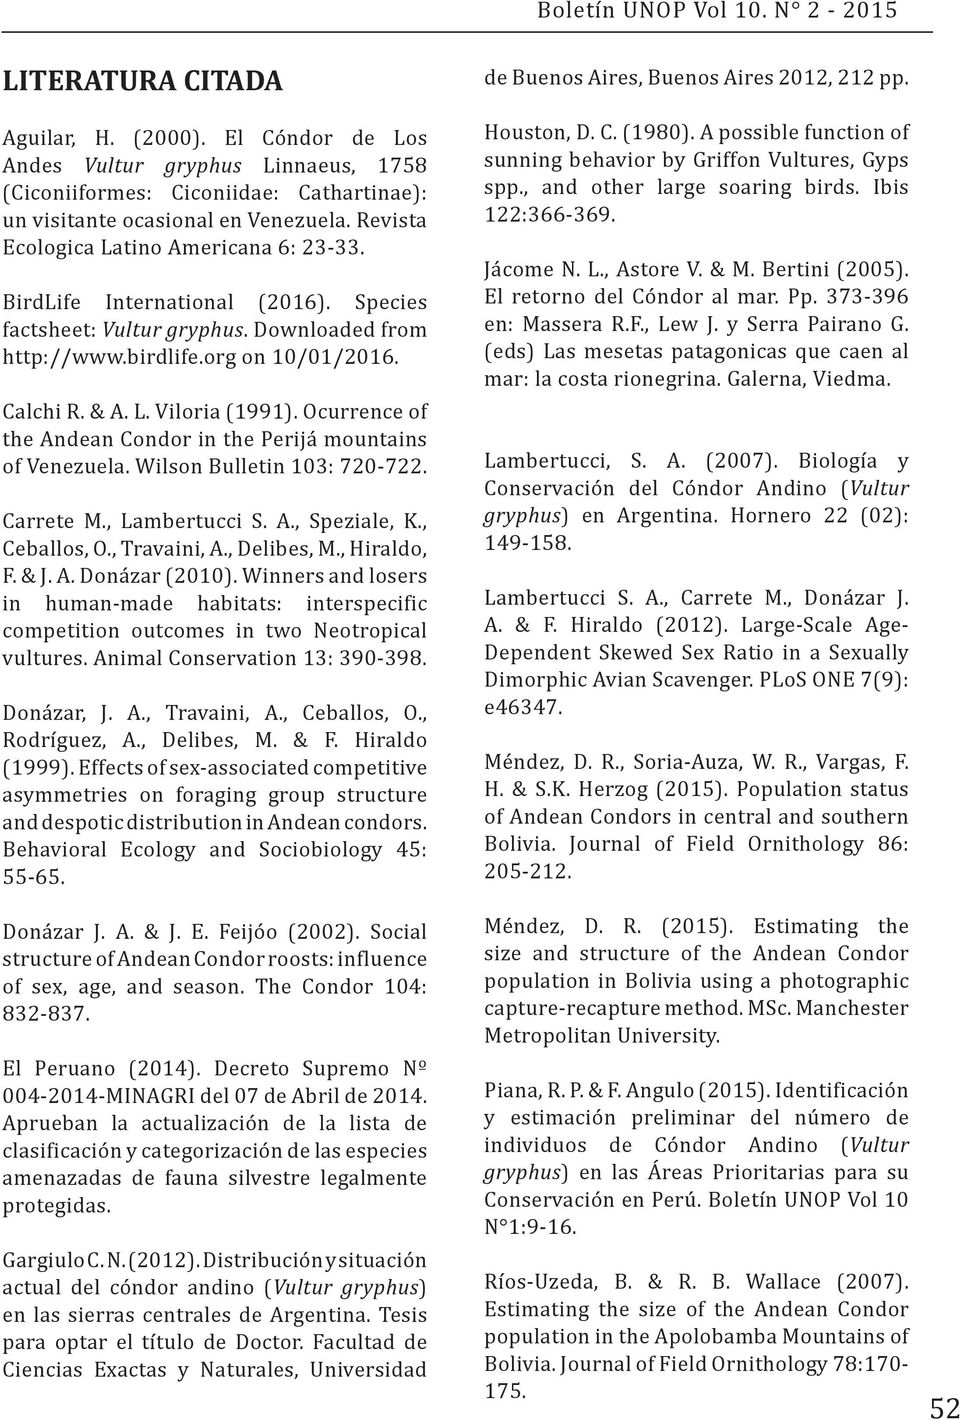 Ocurrence of the Andean Condor in the Perijá mountains of Venezuela. Wilson Bulletin 103: 720-722. Carrete M., Lambertucci S. A., Speziale, K., Ceballos, O., Travaini, A., Delibes, M., Hiraldo, F.